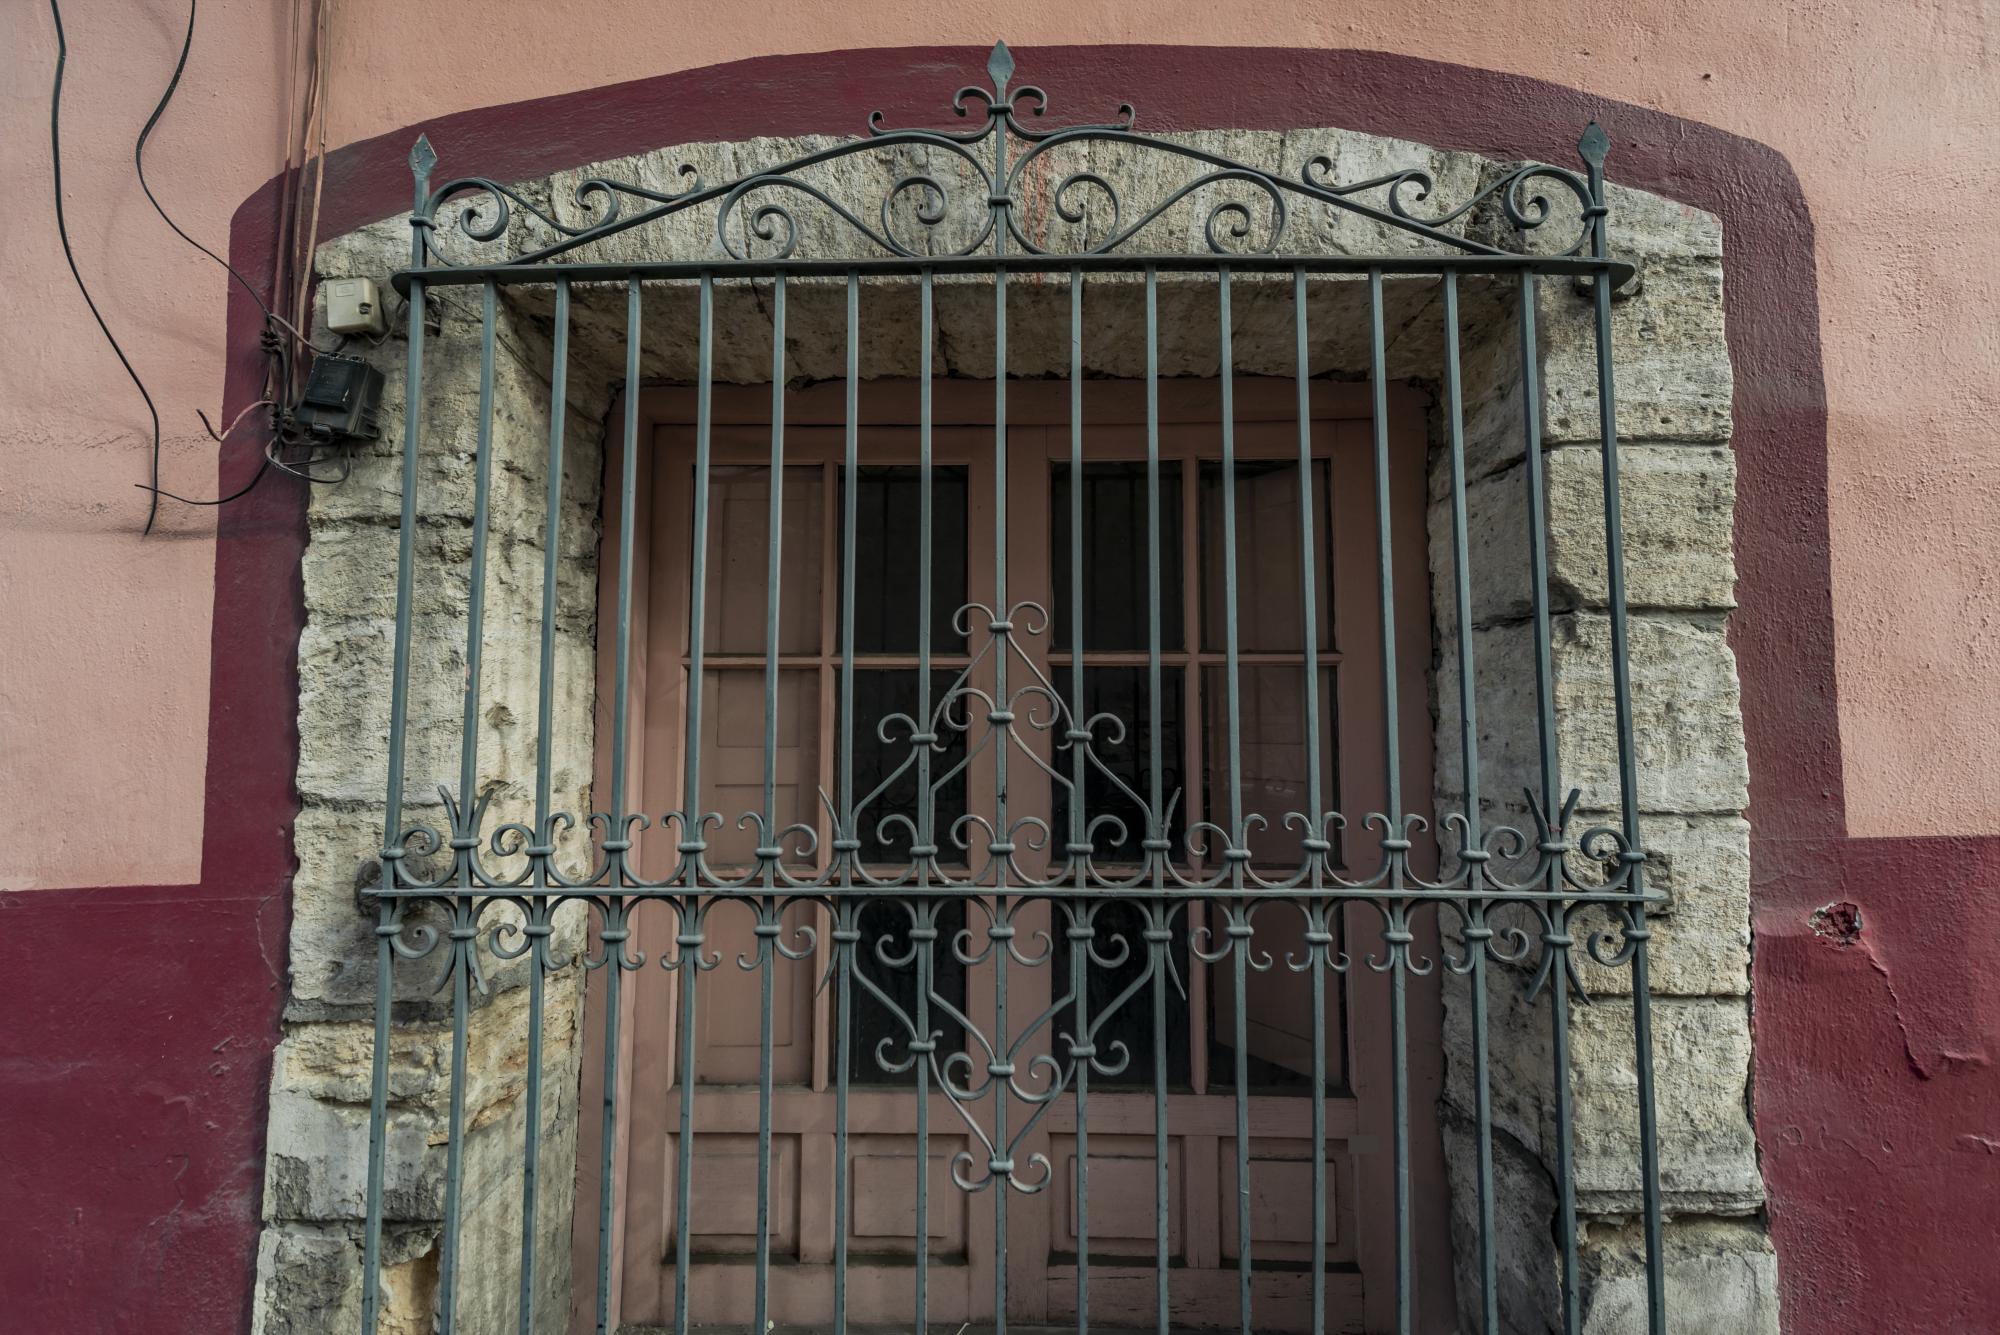 $!Aspectos de “La casa de los espantos”, ubicada a espaldas de la Catedral de Saltillo.